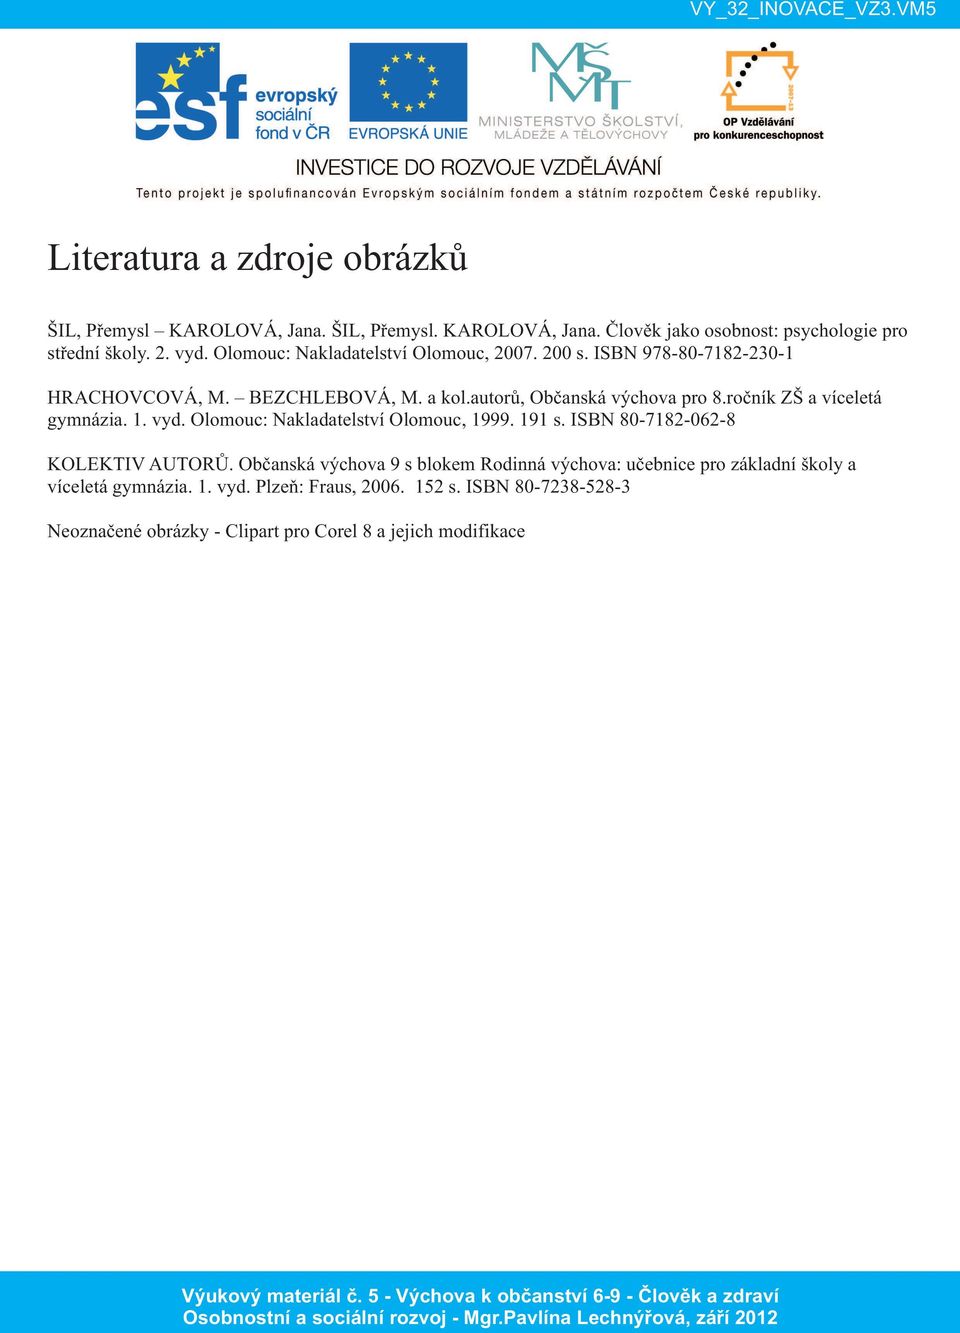 ročník ZŠ a víceletá gymnázia. 1. vyd. Olomouc: Nakladatelství Olomouc, 1999. 191 s. ISBN 80-7182-062-8 KOLEKTIV AUTORŮ.